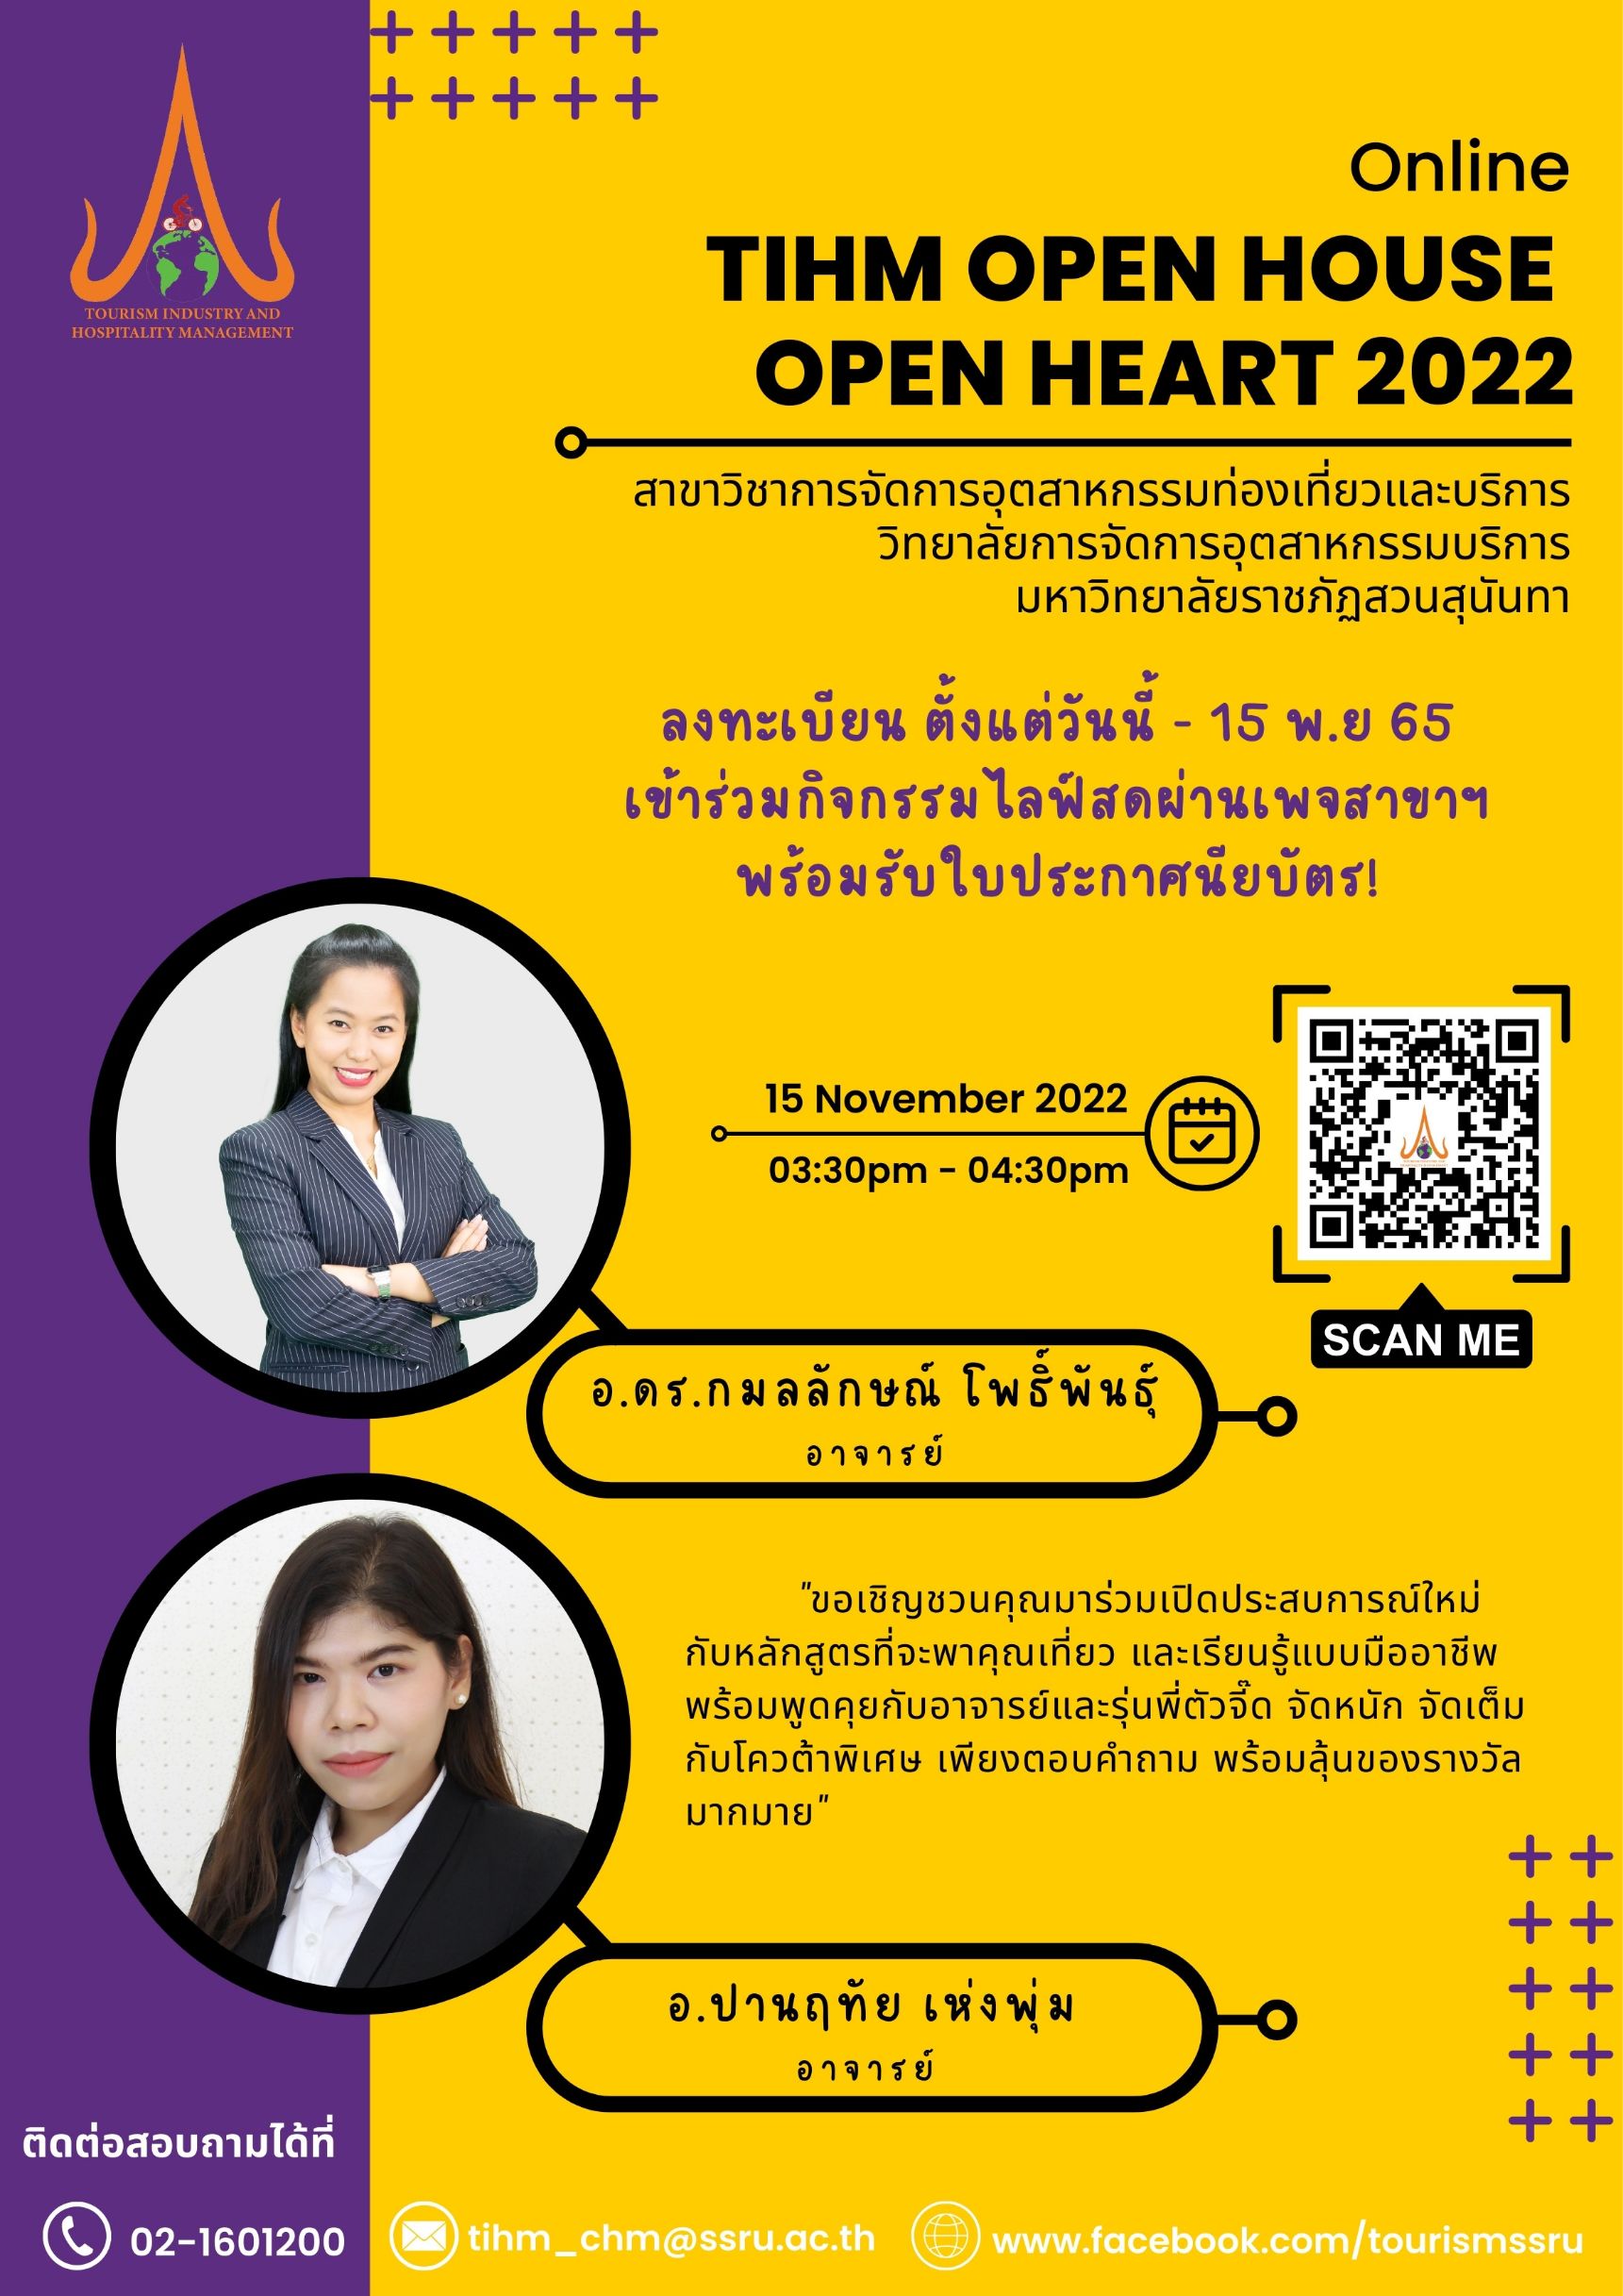 TIHM Open House Open Heart 2022